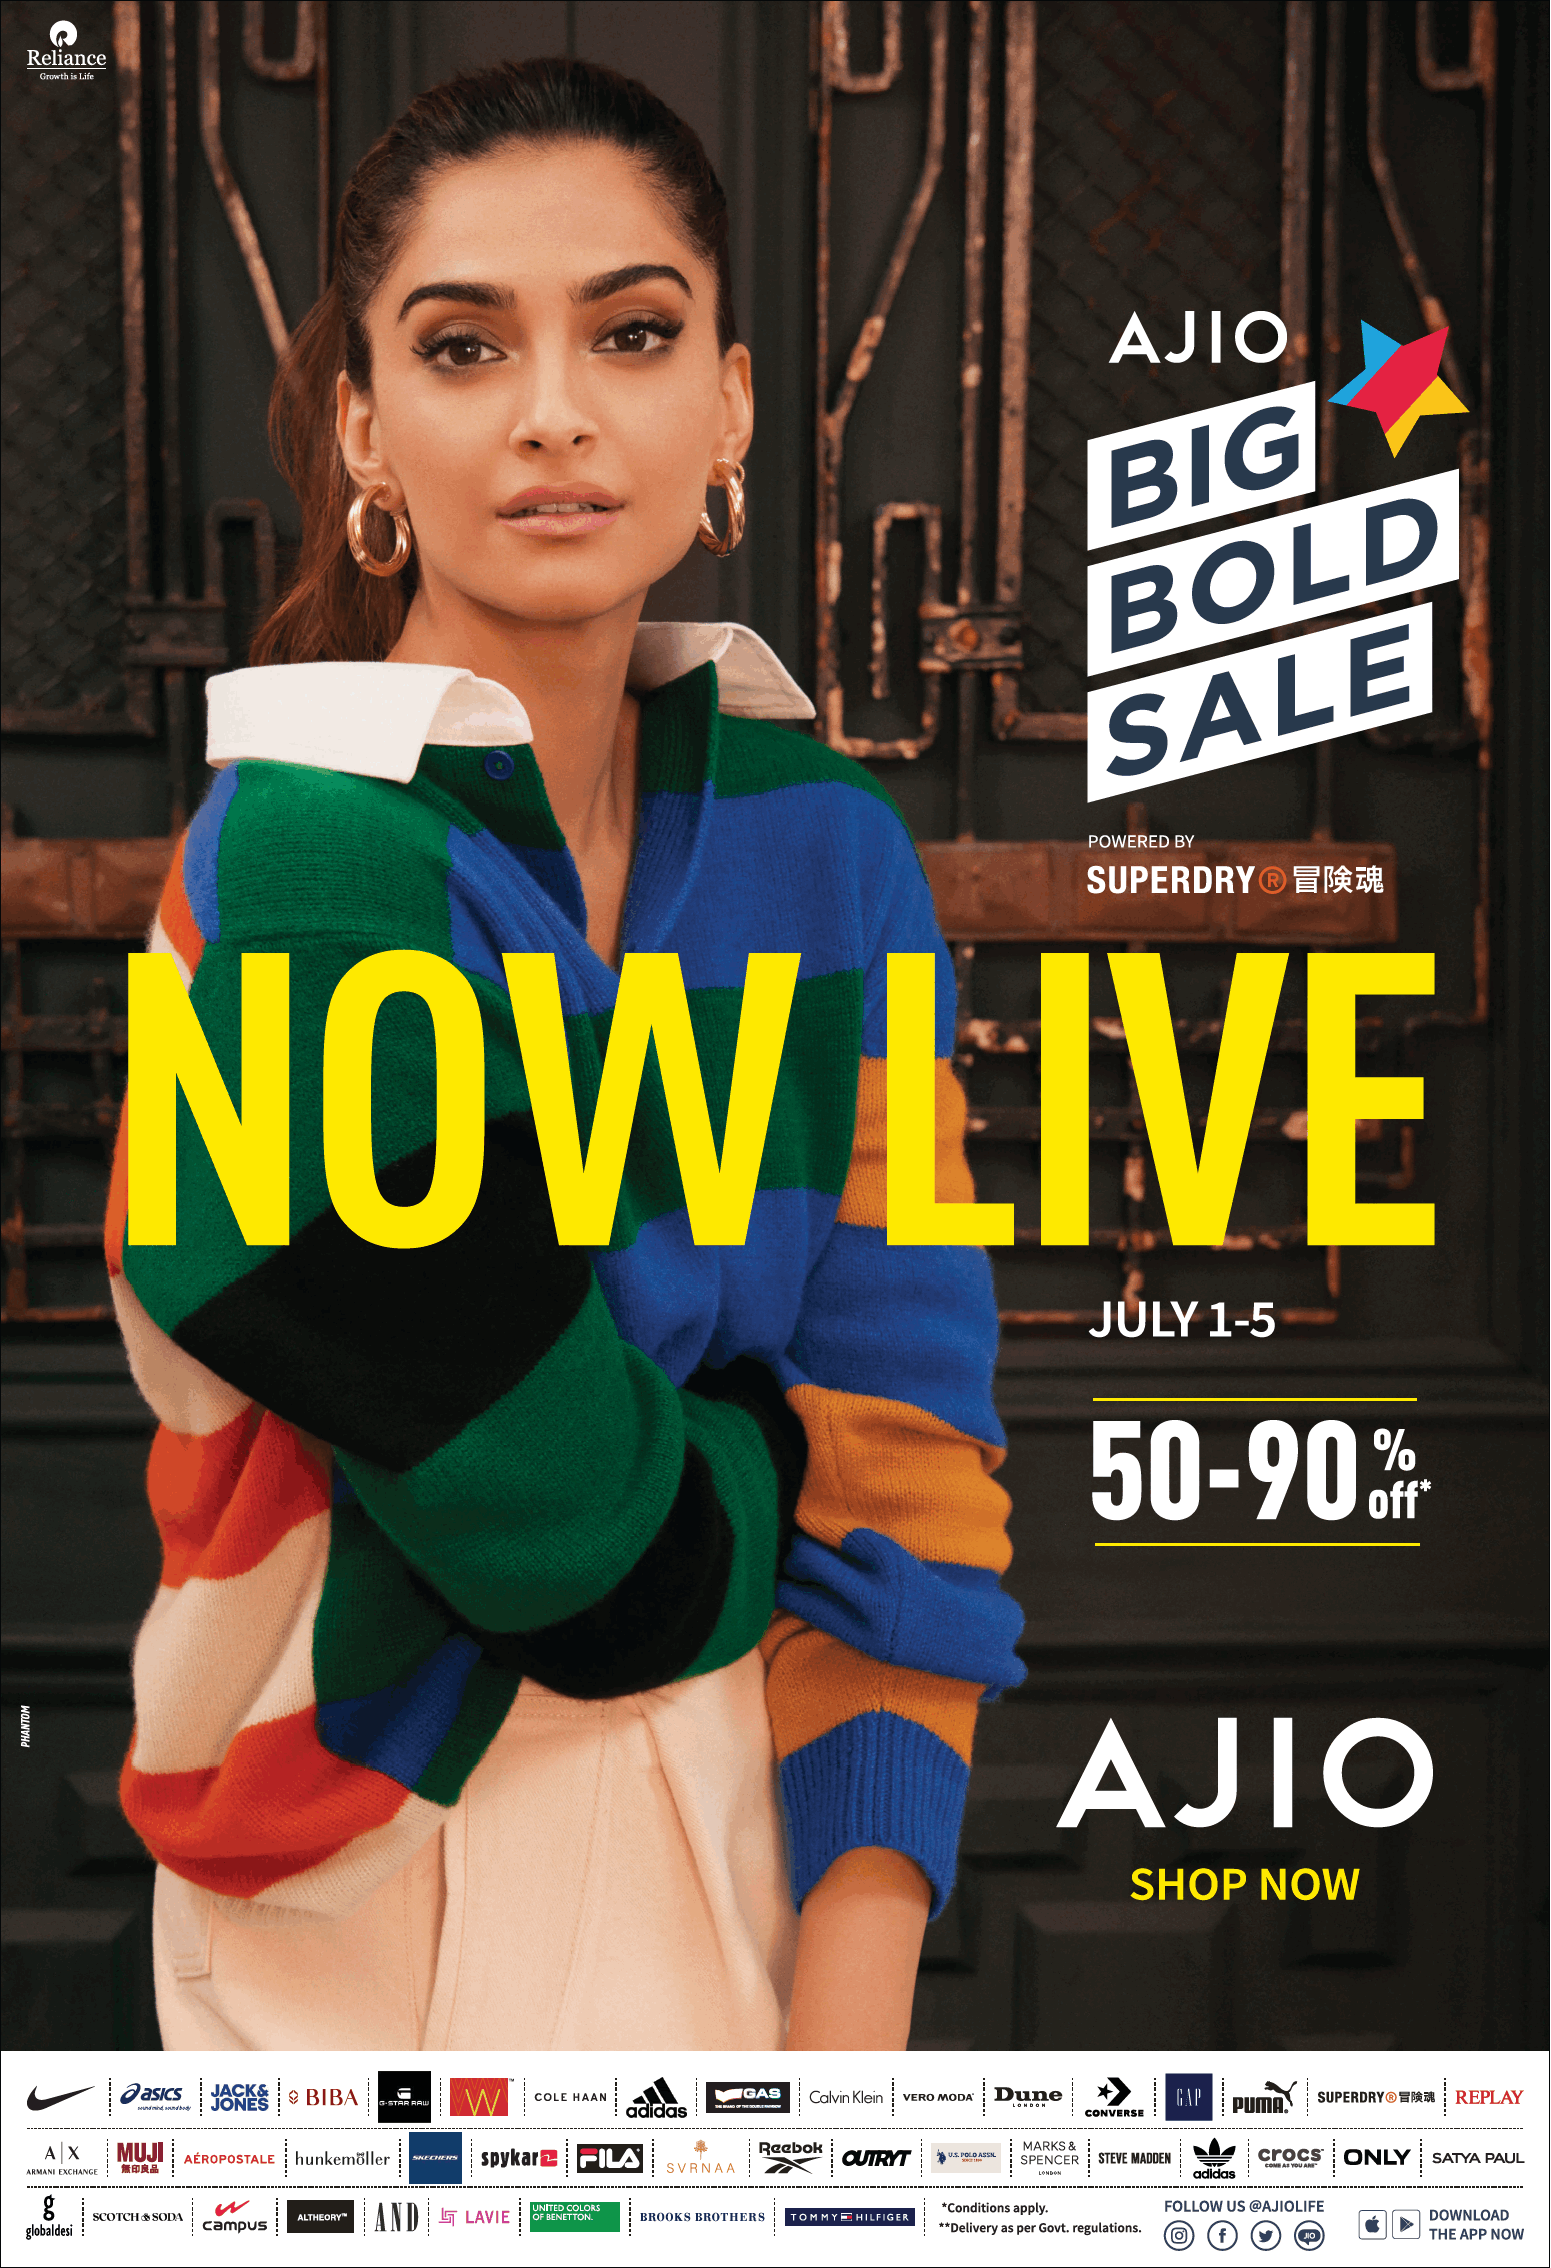 ajio-big-bold-sale-now-live-50-90%-off-ad-toi-delhi-1-7-2021